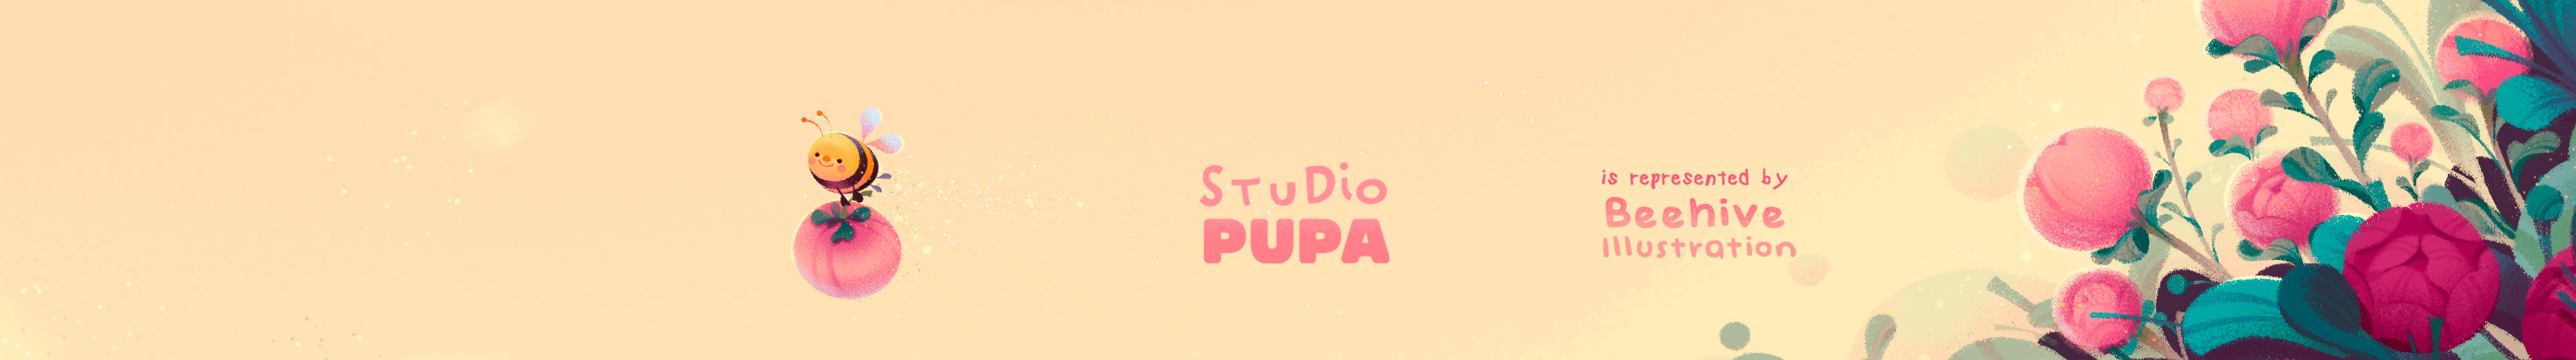 STUDIO PUPA 的個人檔案橫幅